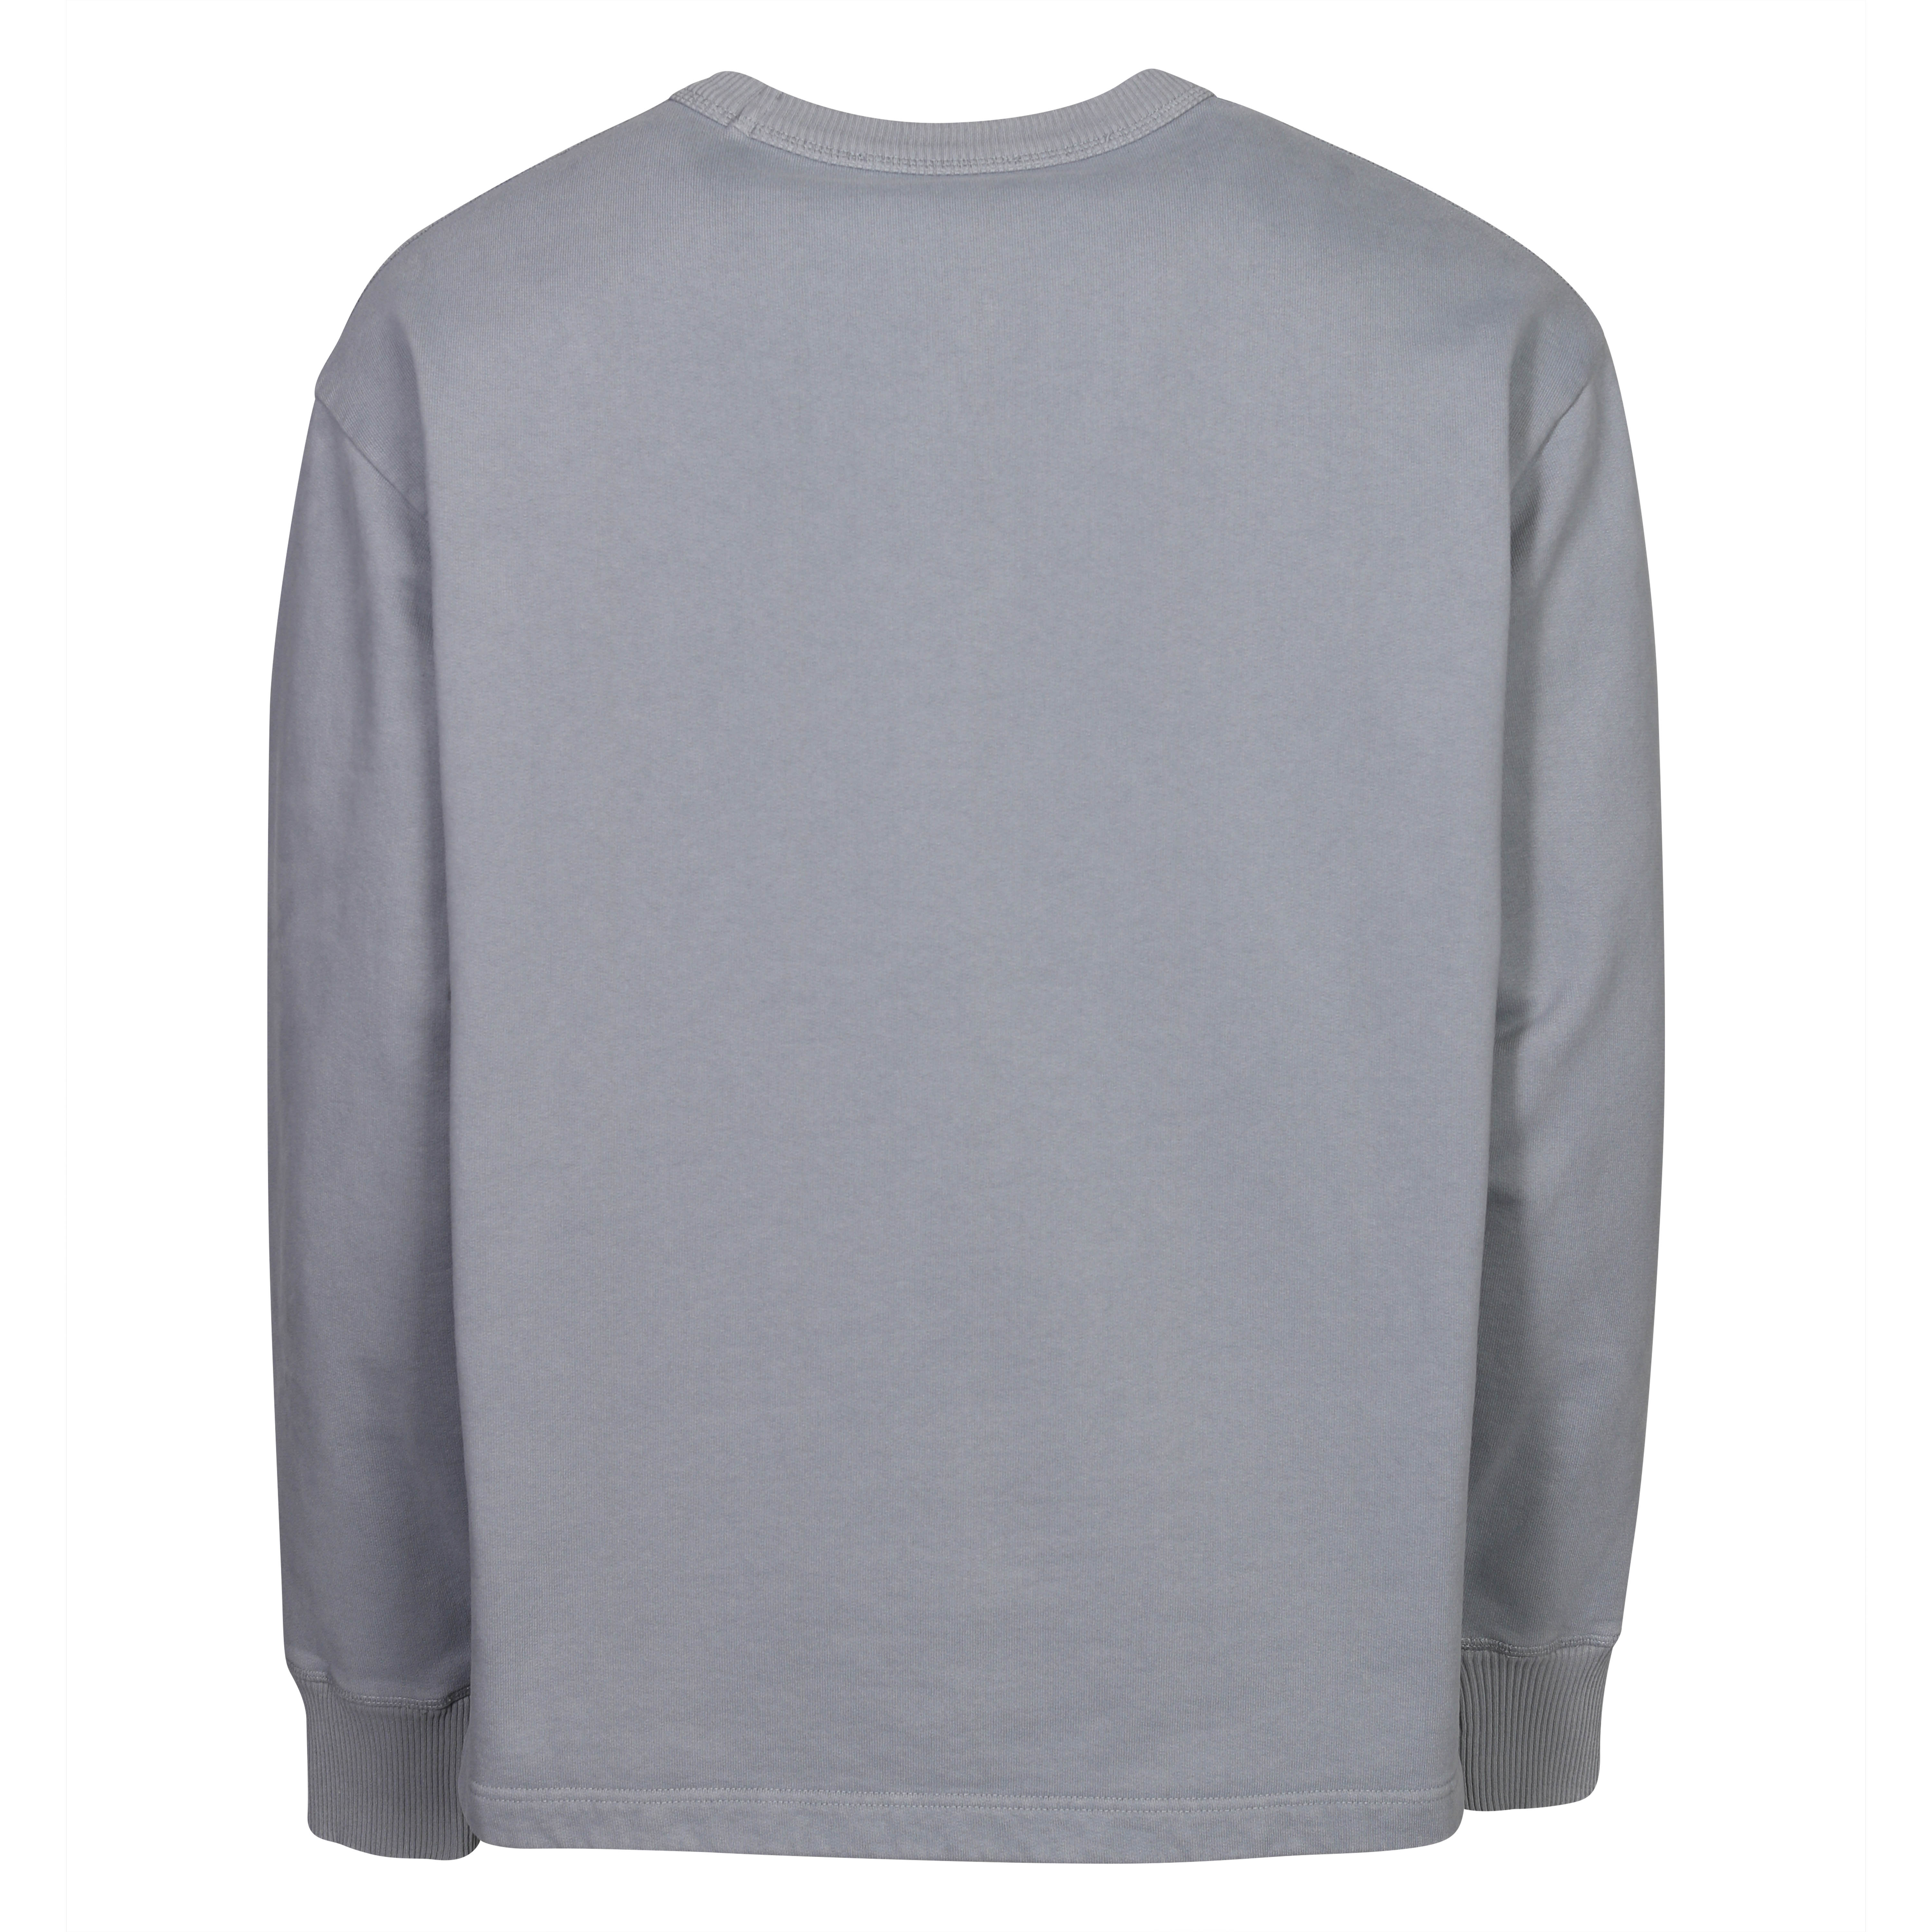 Acne Studios Stamp Sweatshirt in Steel Grey XS